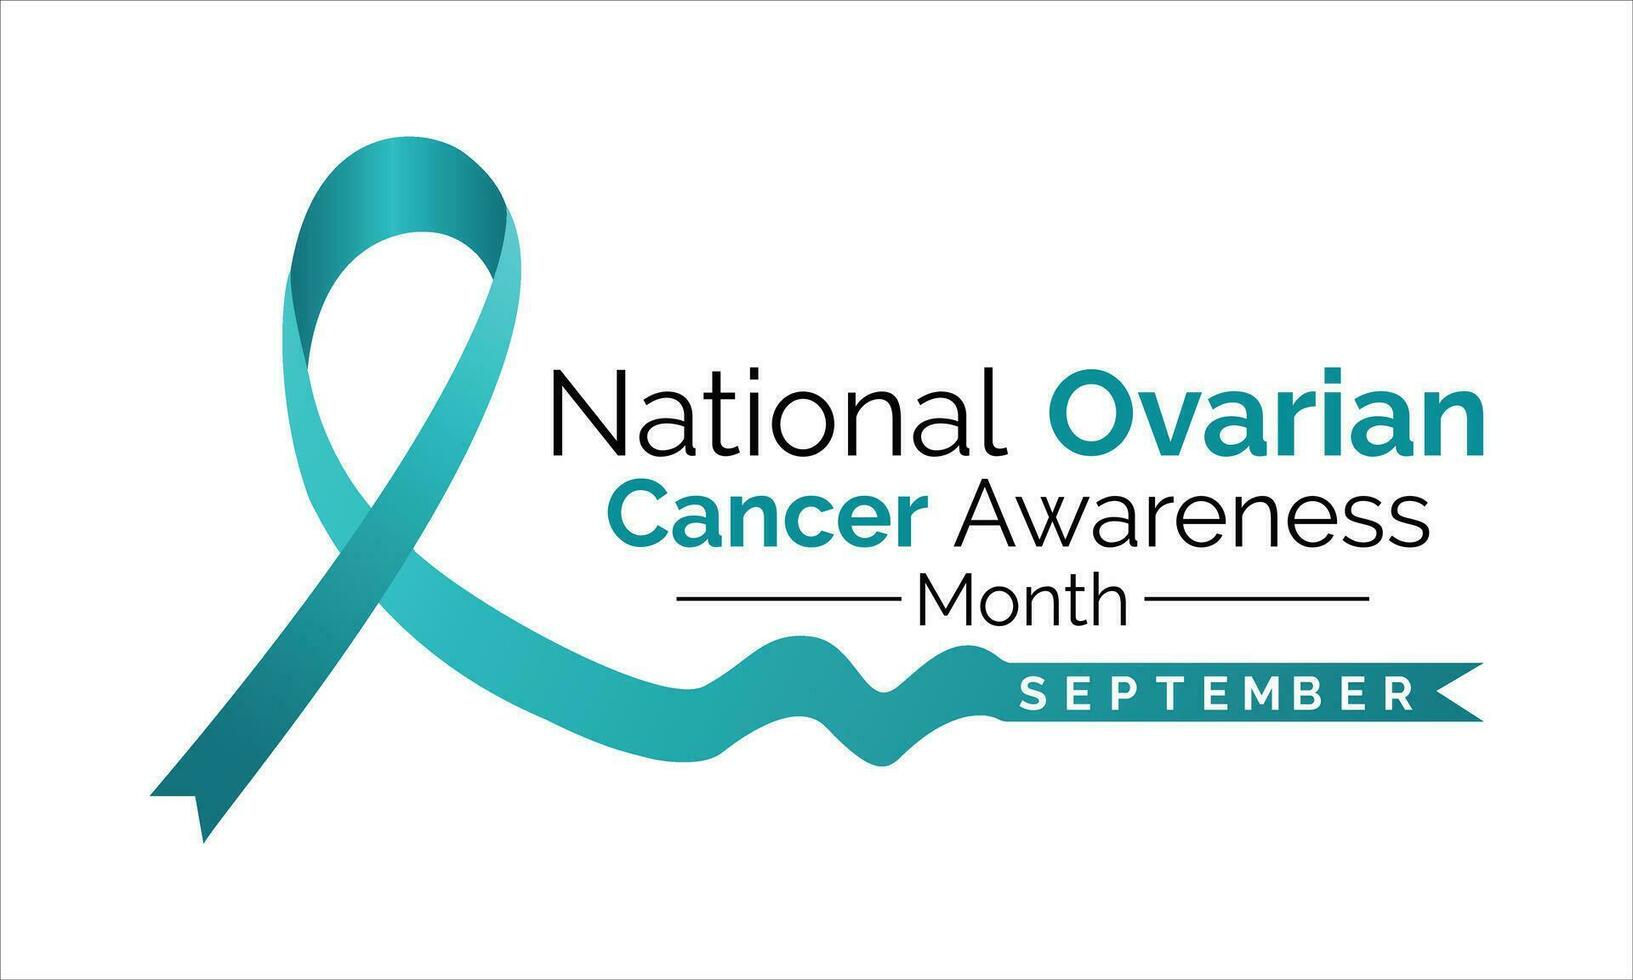 Eierstock Krebs Bewusstsein Monat ist beobachtete jeder Jahr im September. Banner Design Vorlage Vektor Weiß Hintergrund.